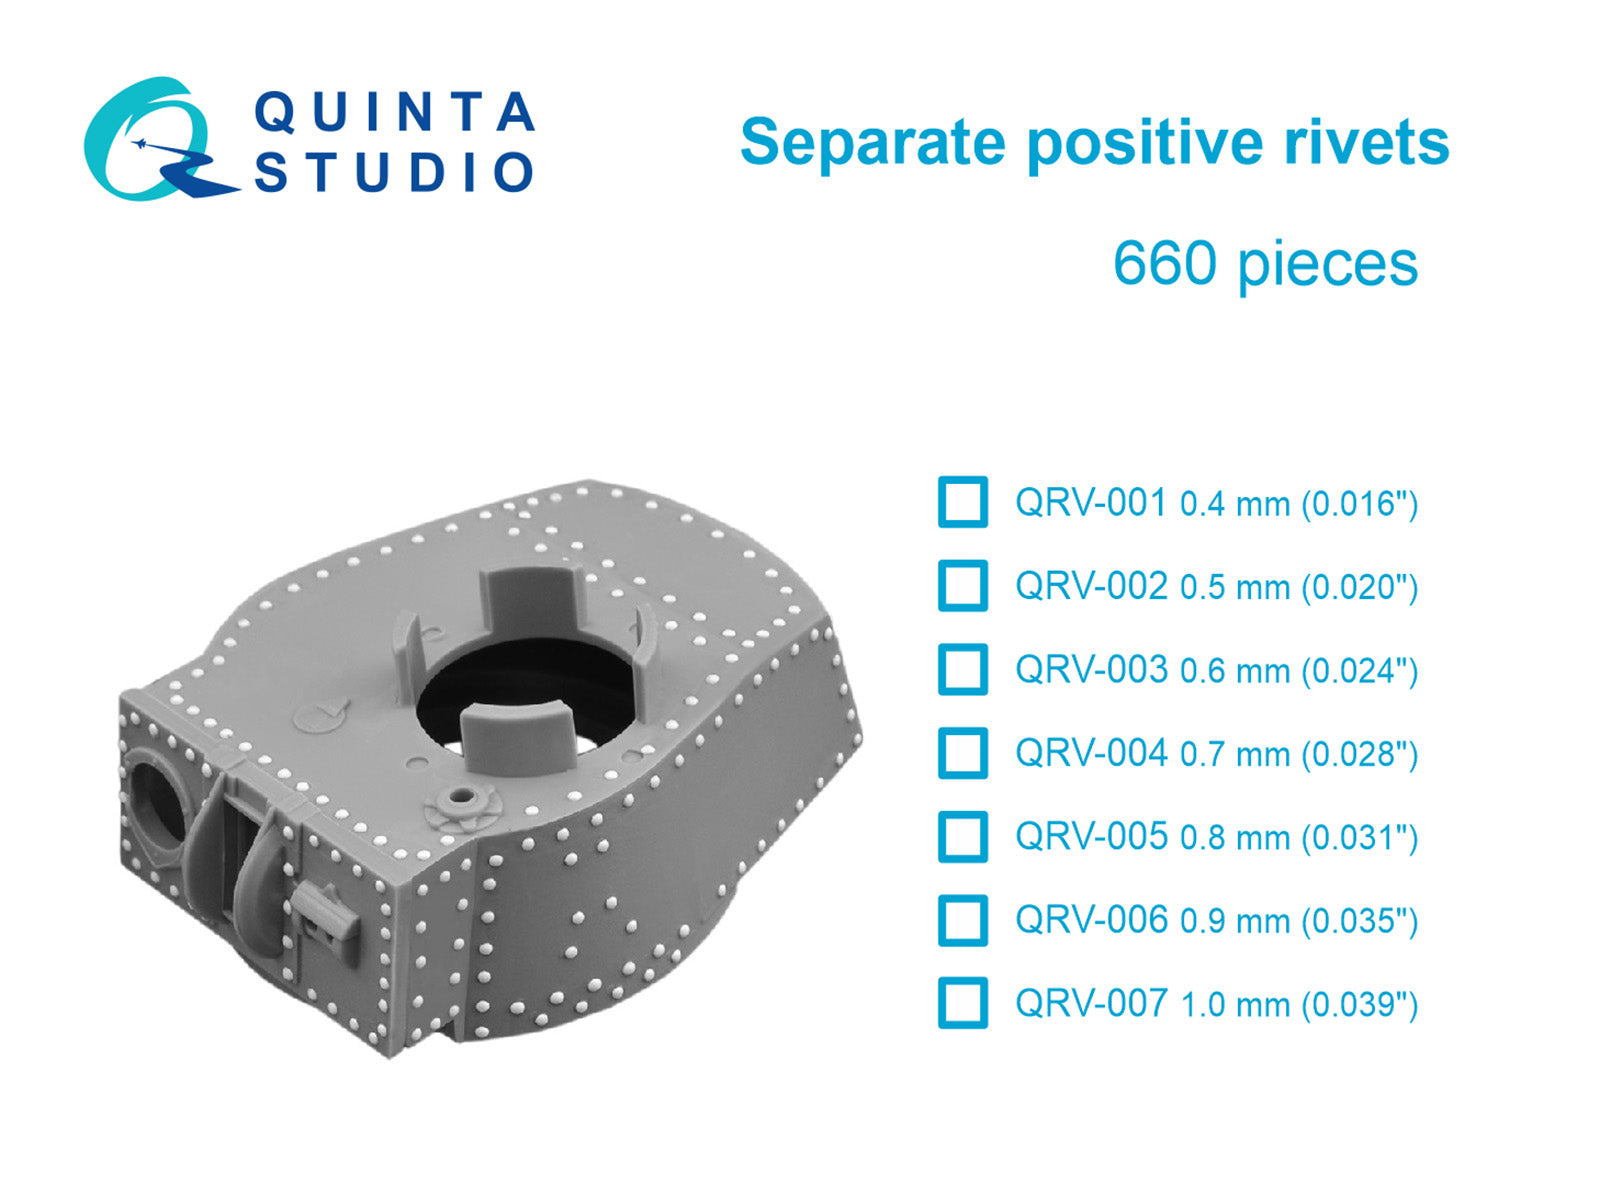 Quinta Studio - Separate positive rivets, 1.0mm (0.039") 660 pcs QRV-007